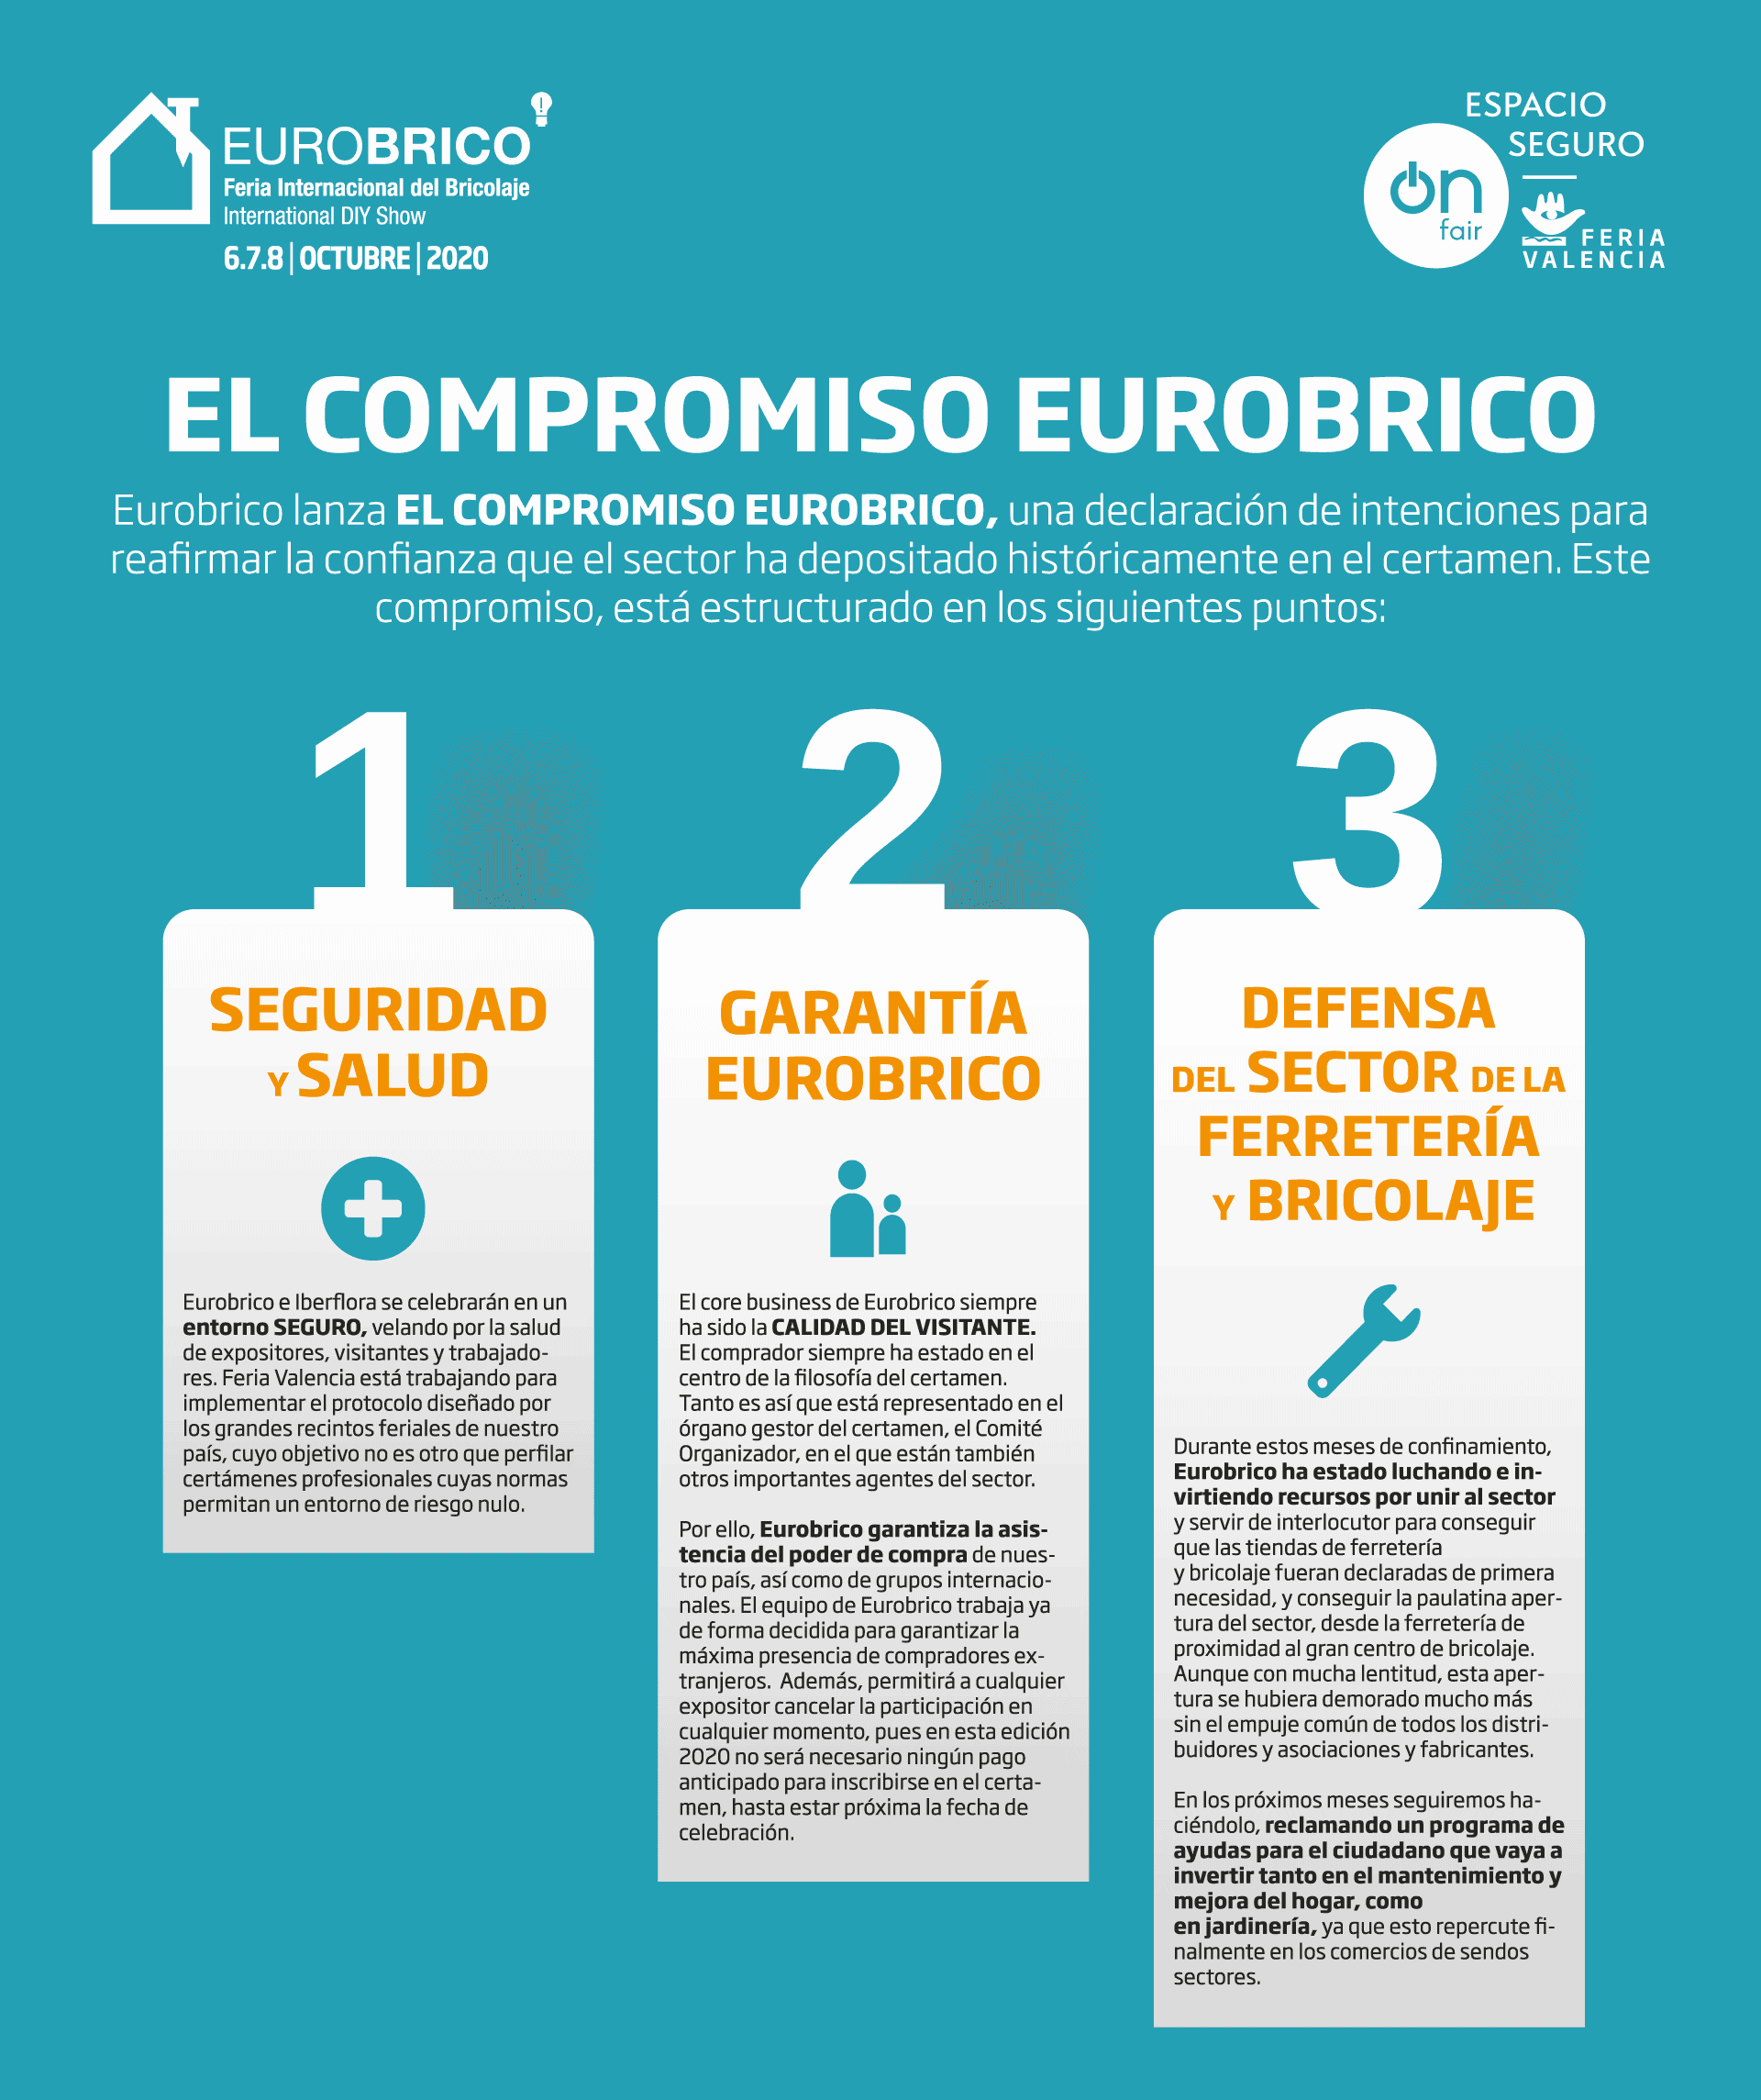 Eurobrico lanciert EUROBRICO COMMITMENT zur Unterstützung des Sektors